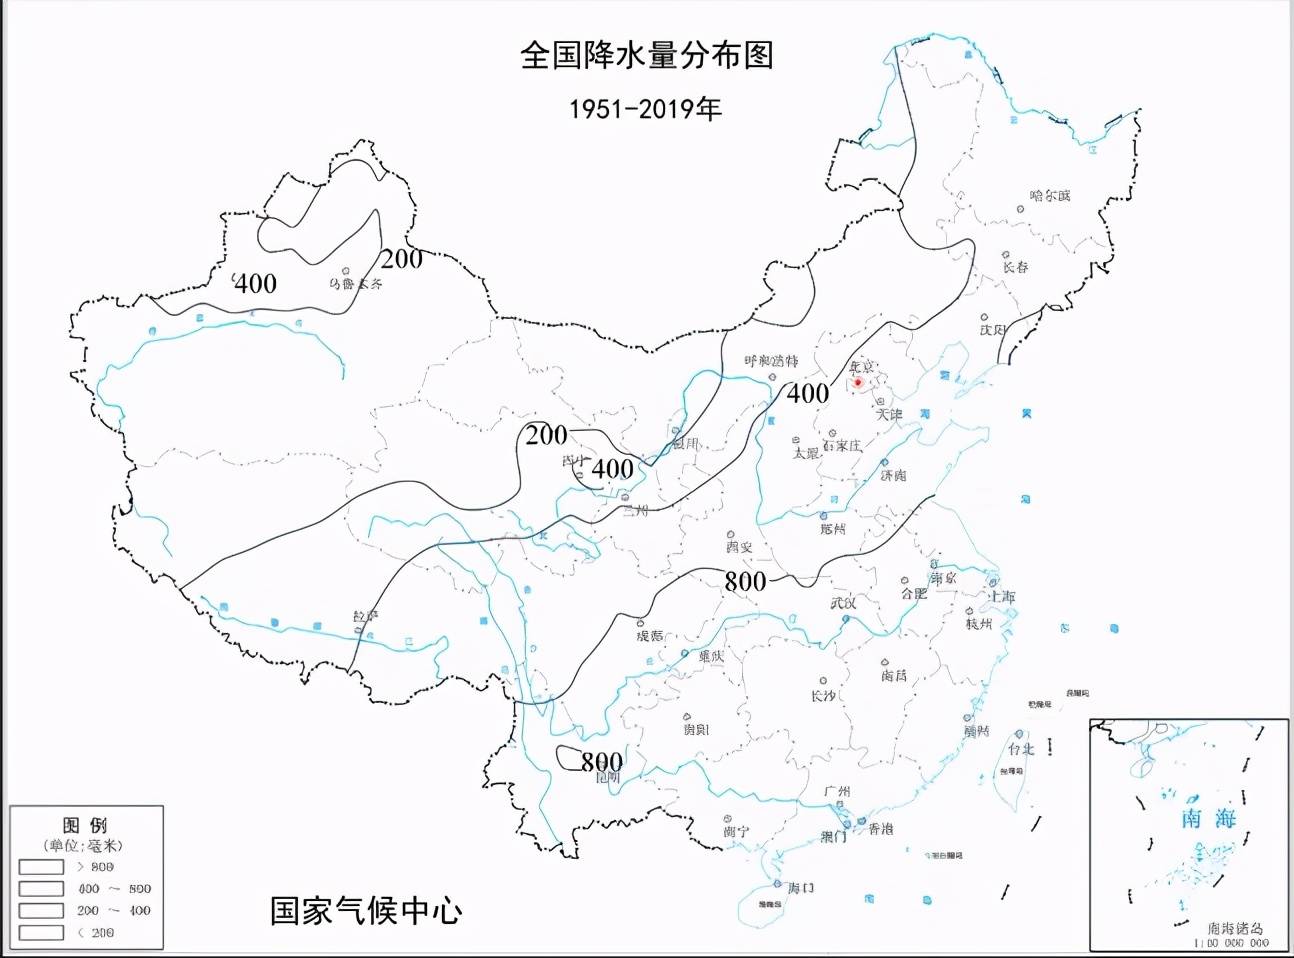 来说,明长城在陕西北部一段是恰巧建设在了我国400毫米等降水量线上